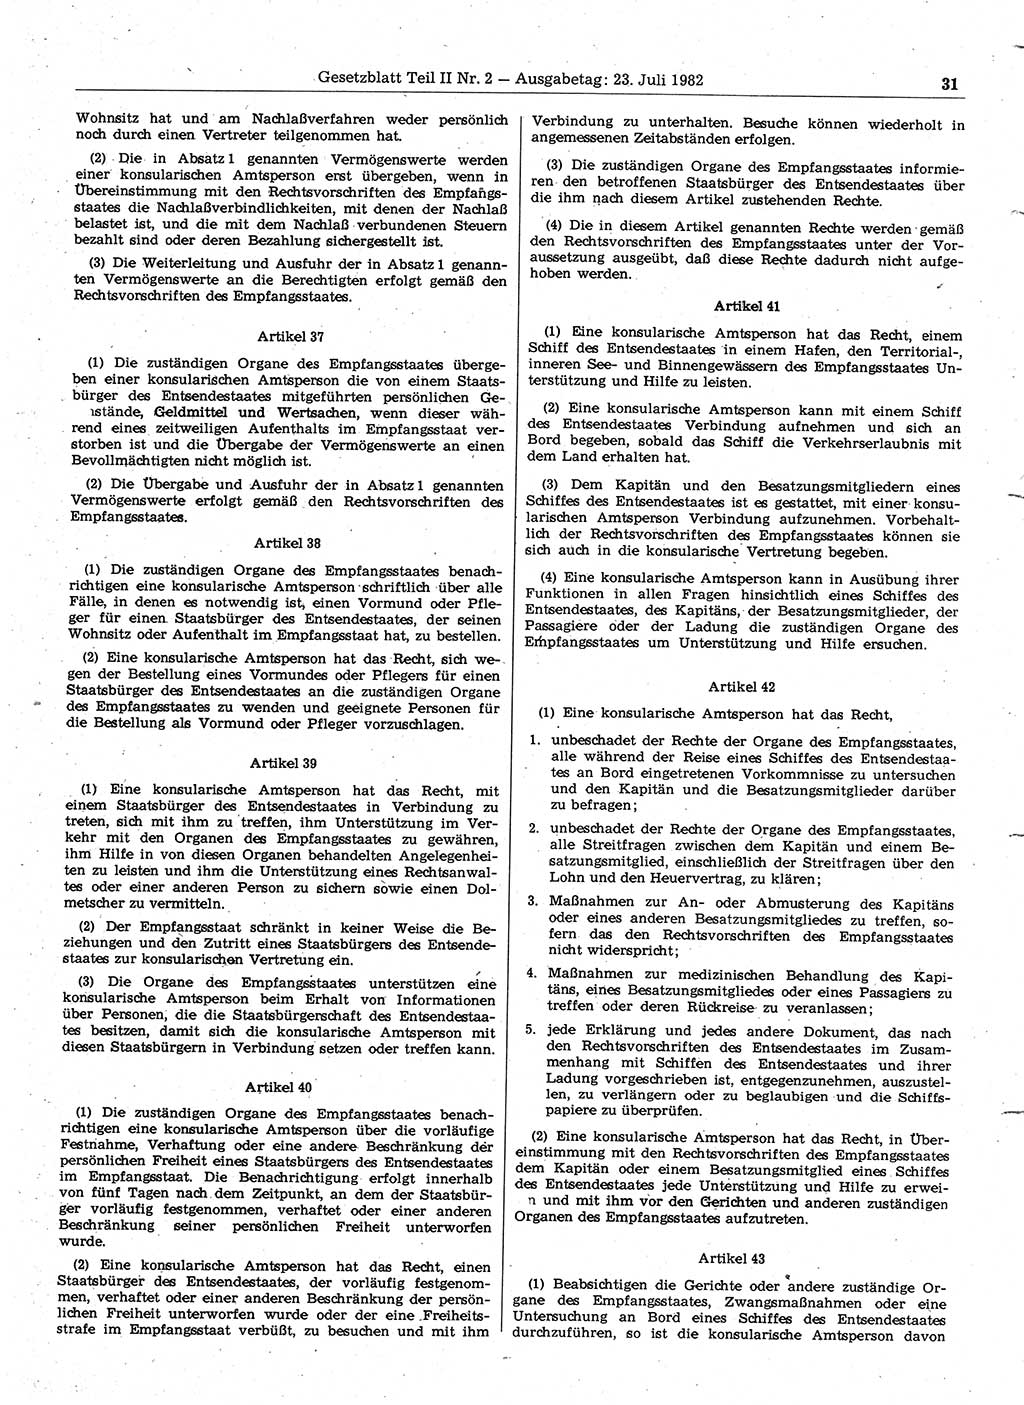 Gesetzblatt (GBl.) der Deutschen Demokratischen Republik (DDR) Teil ⅠⅠ 1982, Seite 31 (GBl. DDR ⅠⅠ 1982, S. 31)